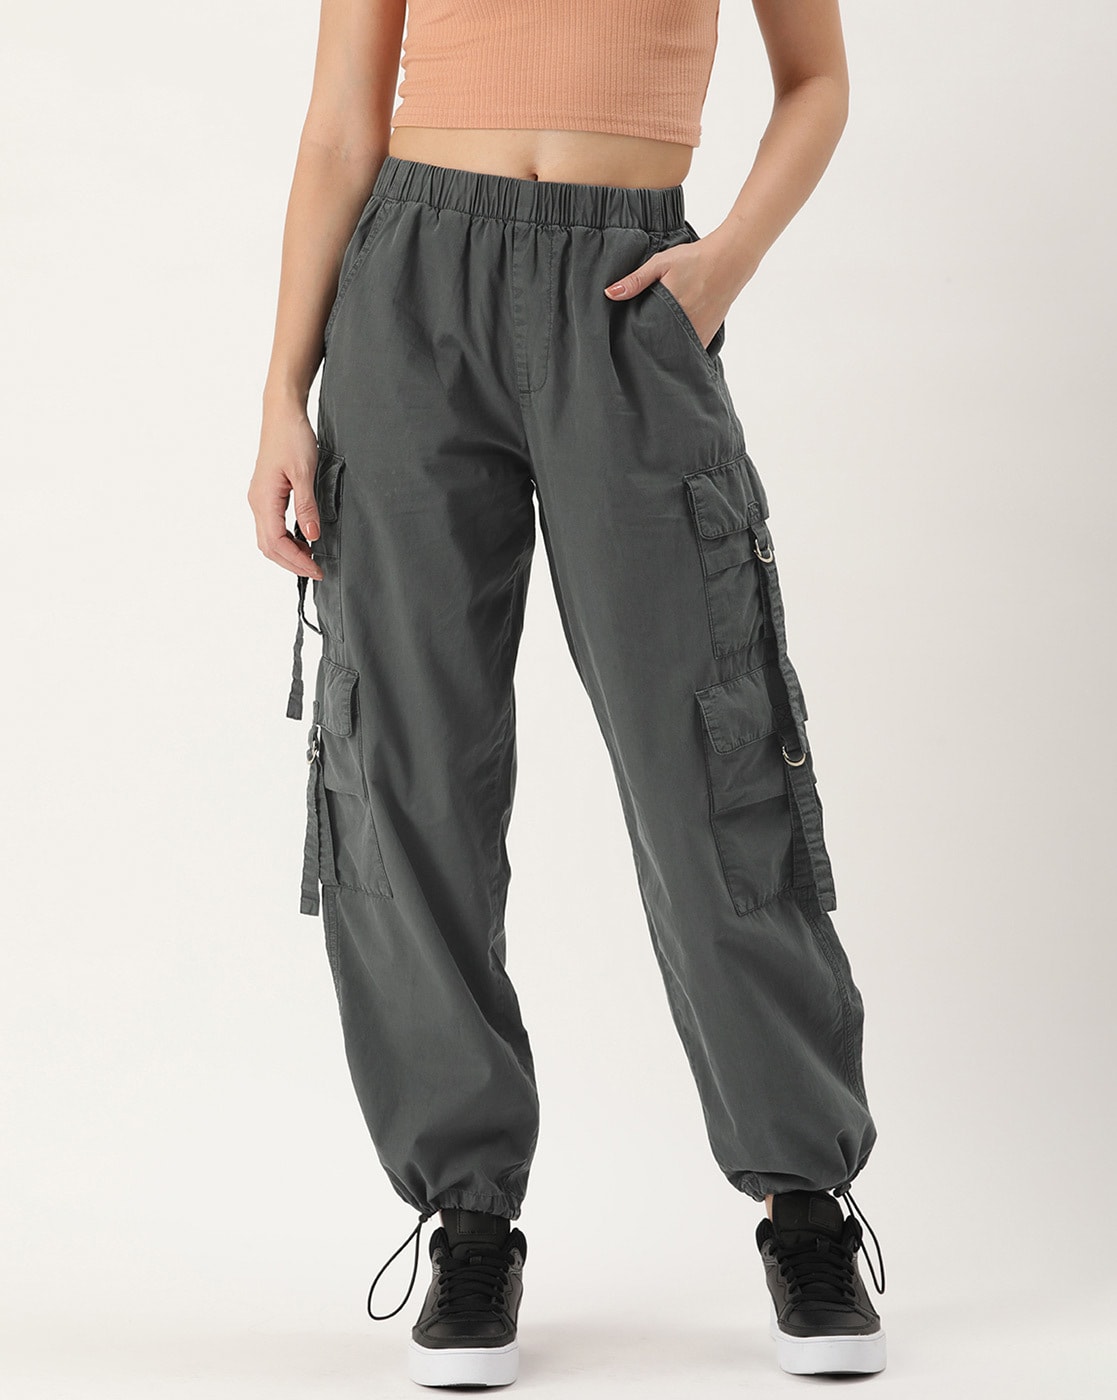 Grey Cargo Pants for Women | Aritzia CA